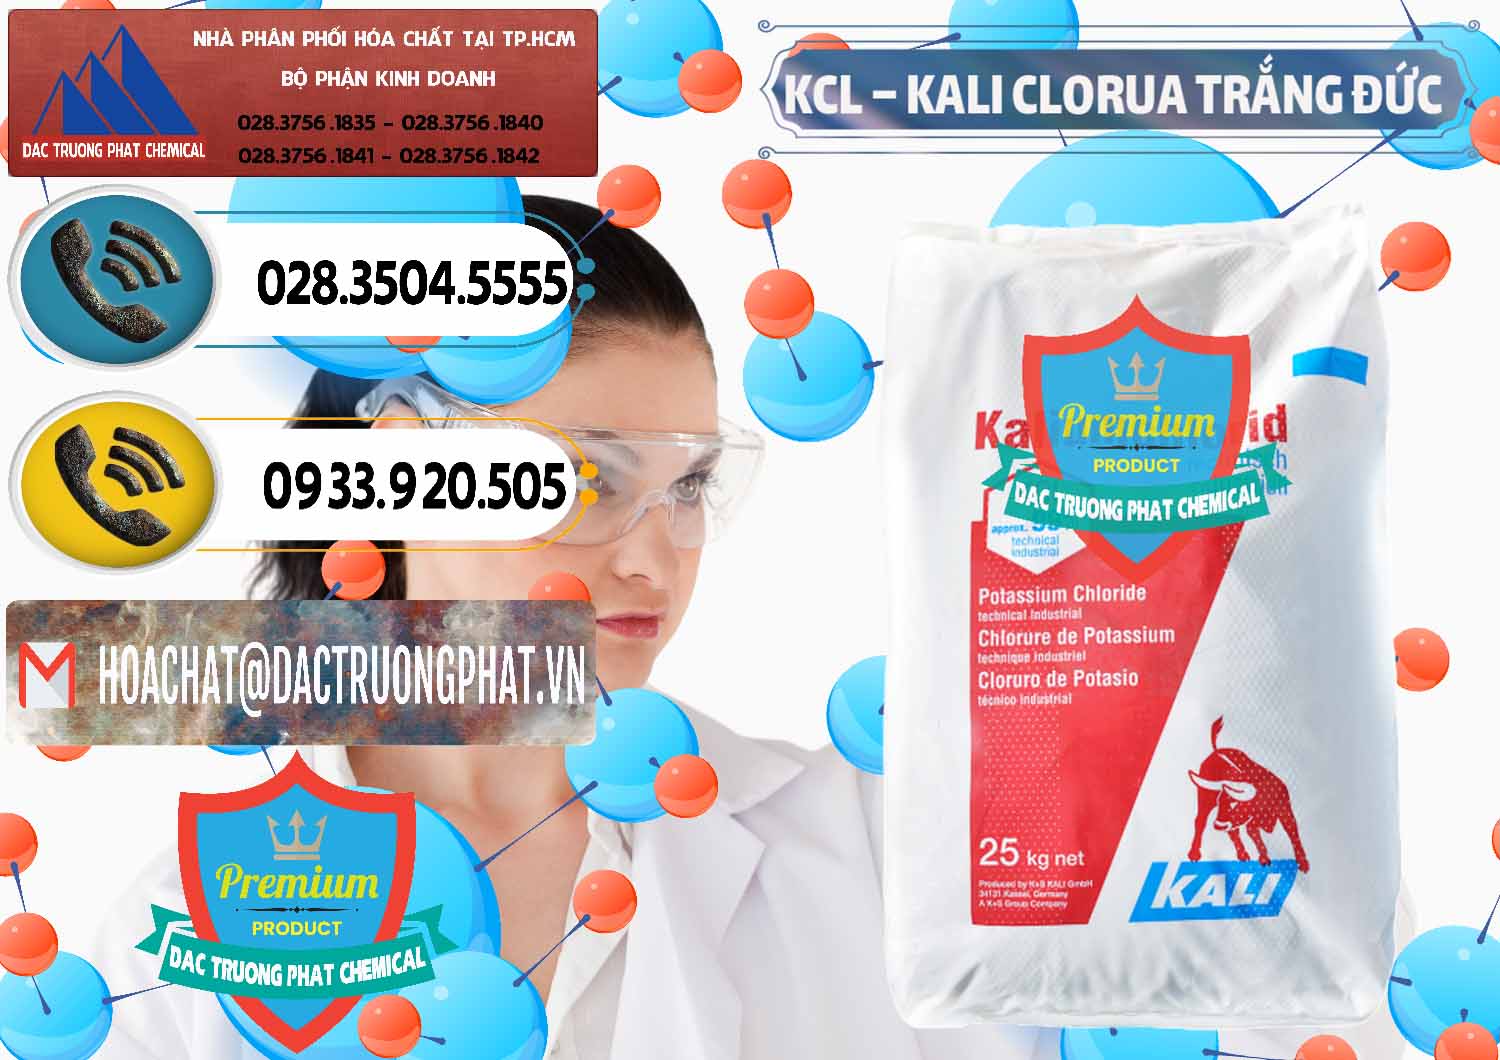 Công ty chuyên kinh doanh & bán KCL – Kali Clorua Trắng Đức Germany - 0086 - Công ty phân phối _ bán hóa chất tại TP.HCM - hoachatdetnhuom.vn